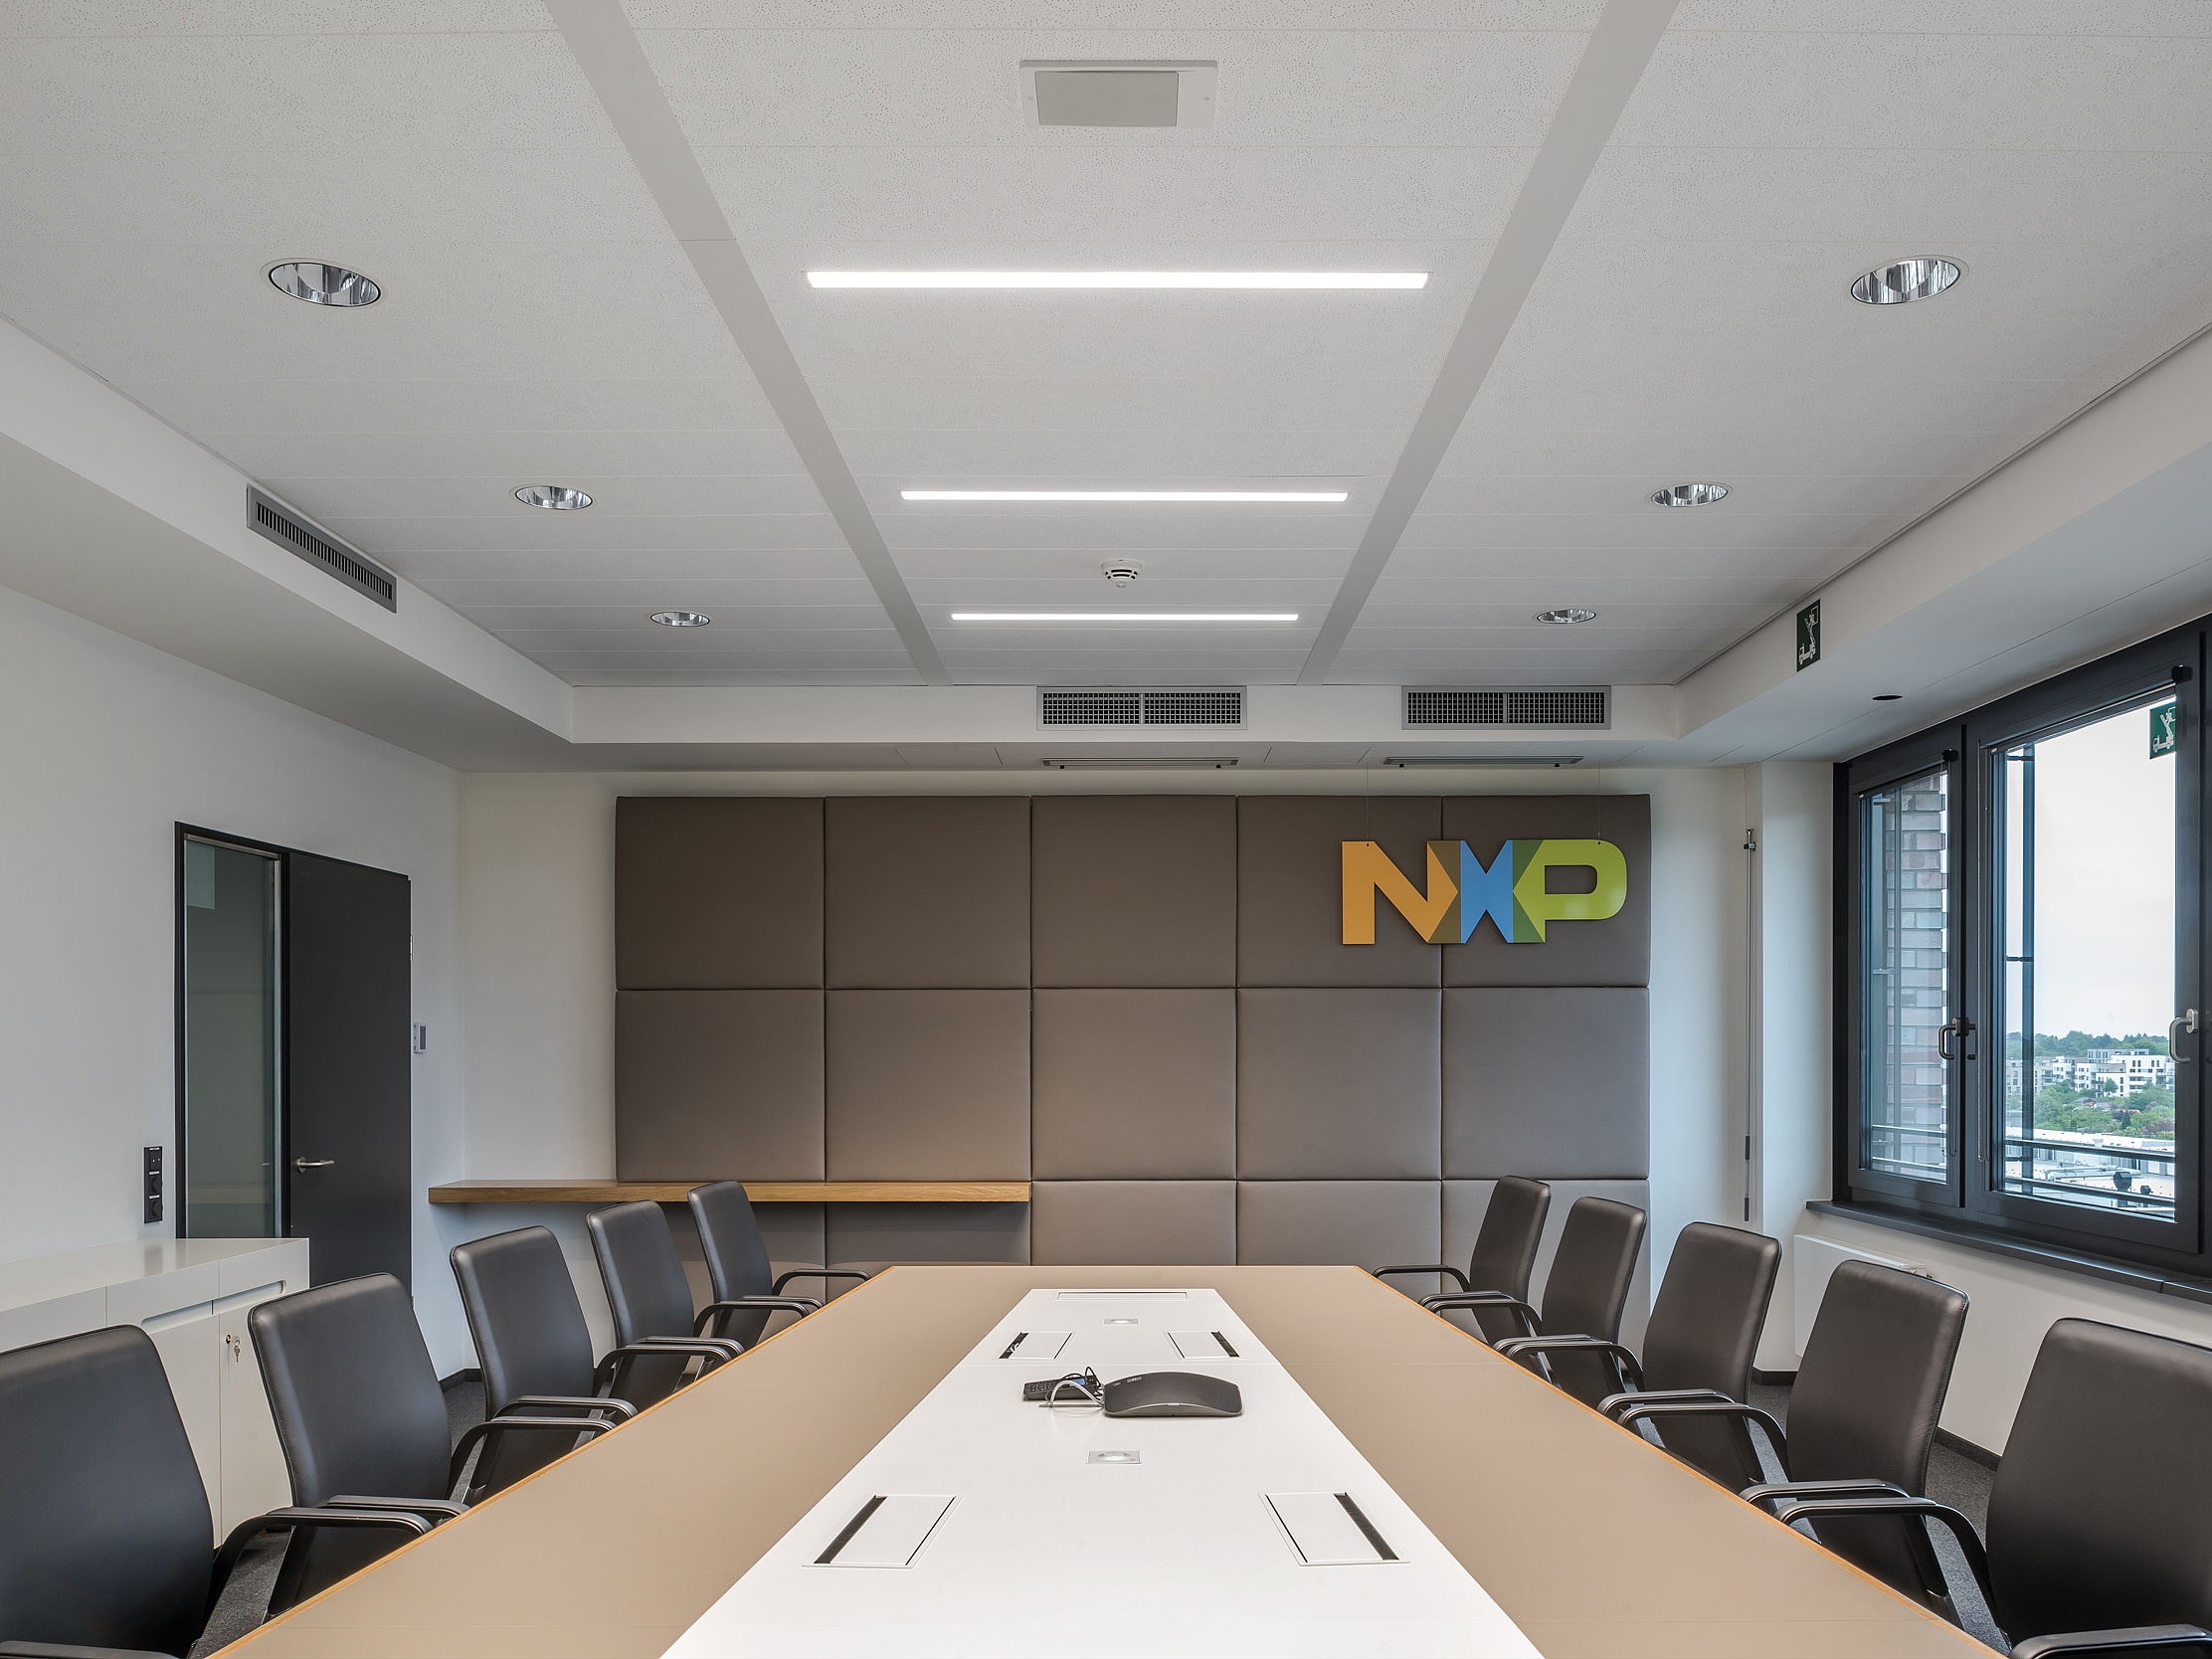 NXP Гамбург – проект, реализованный Arbonia